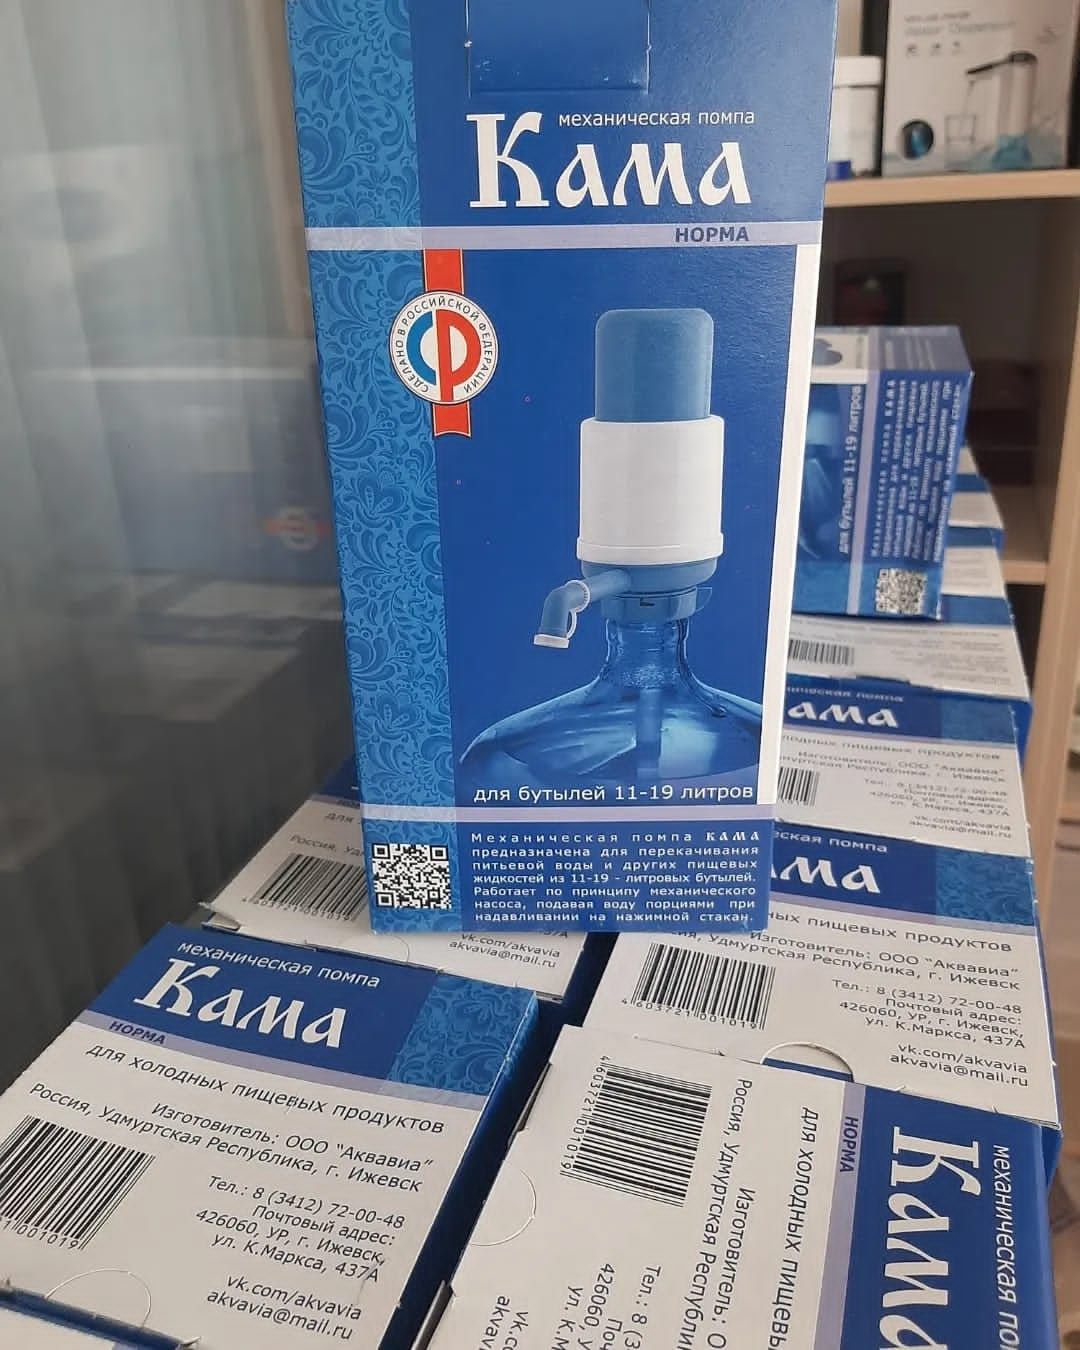 Помпа механическая Кама Норма (Россия) для бутилированной воды